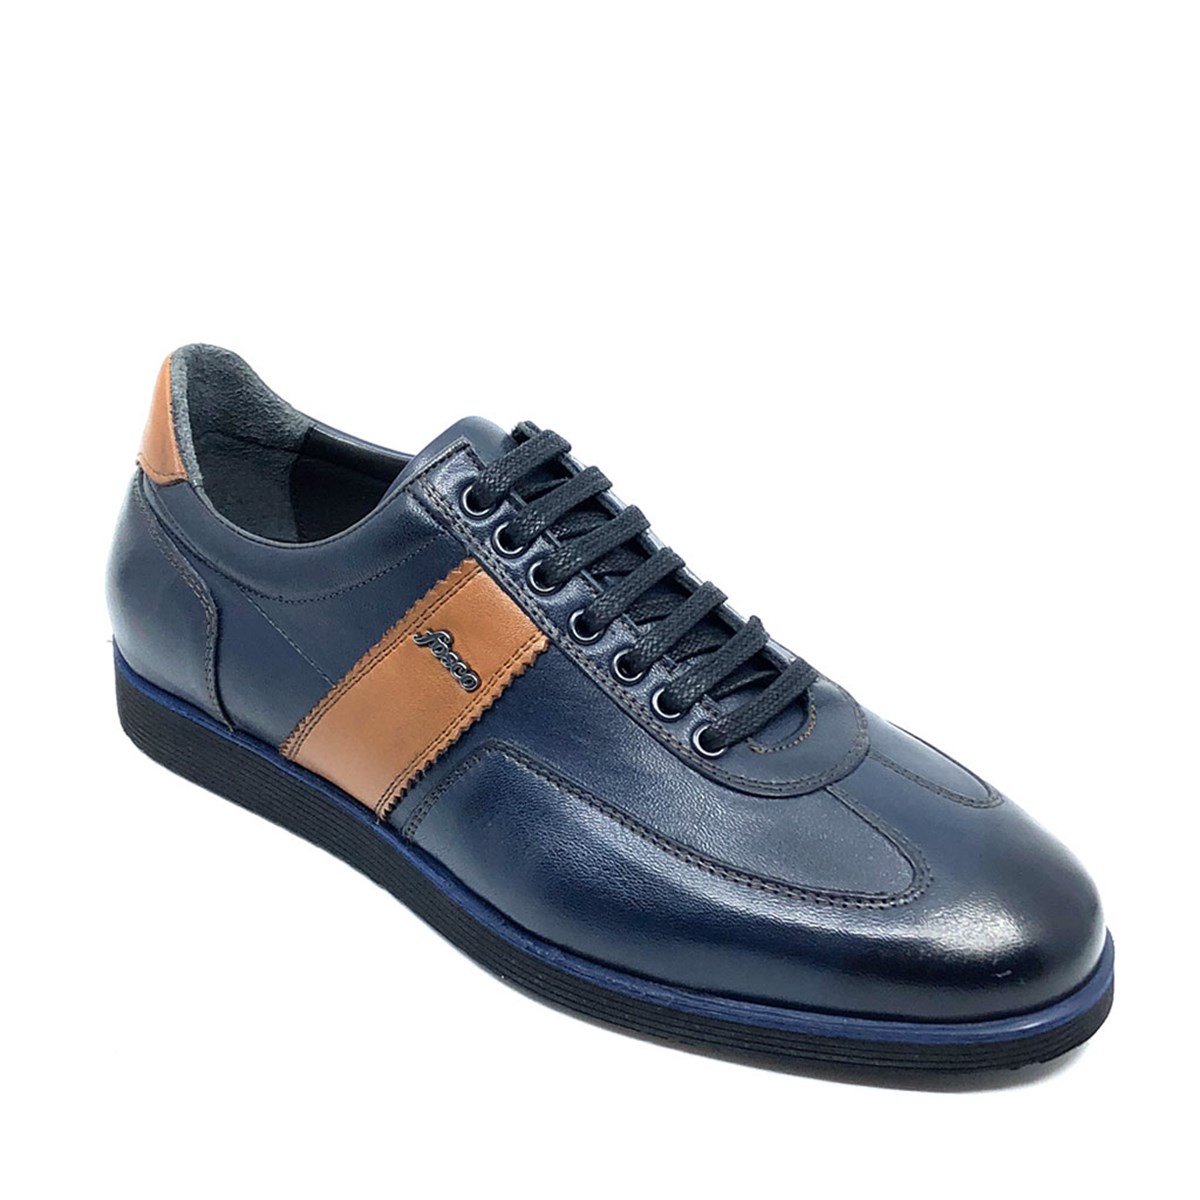 Erkek Lacivert Günlük Confort Bağcıklı Spor Ayakkabı, Renk: Lacivert, Beden: 42